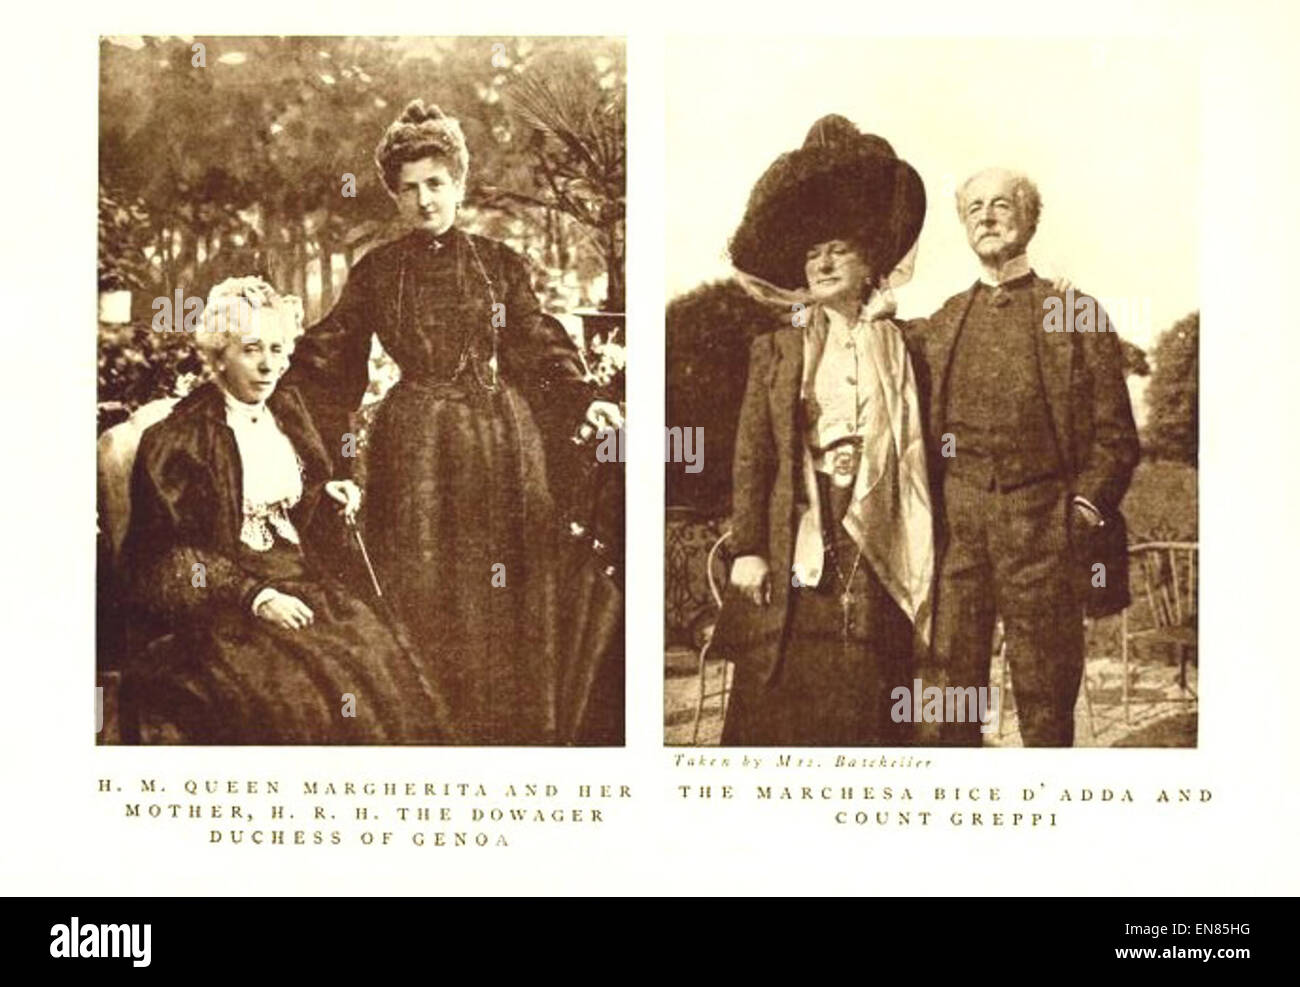 BATES-BATCHELLER (1911) p240 - H. M. la regina Margherita e sua madre, H. R. H. la Duchessa Dowager di Genova Foto Stock